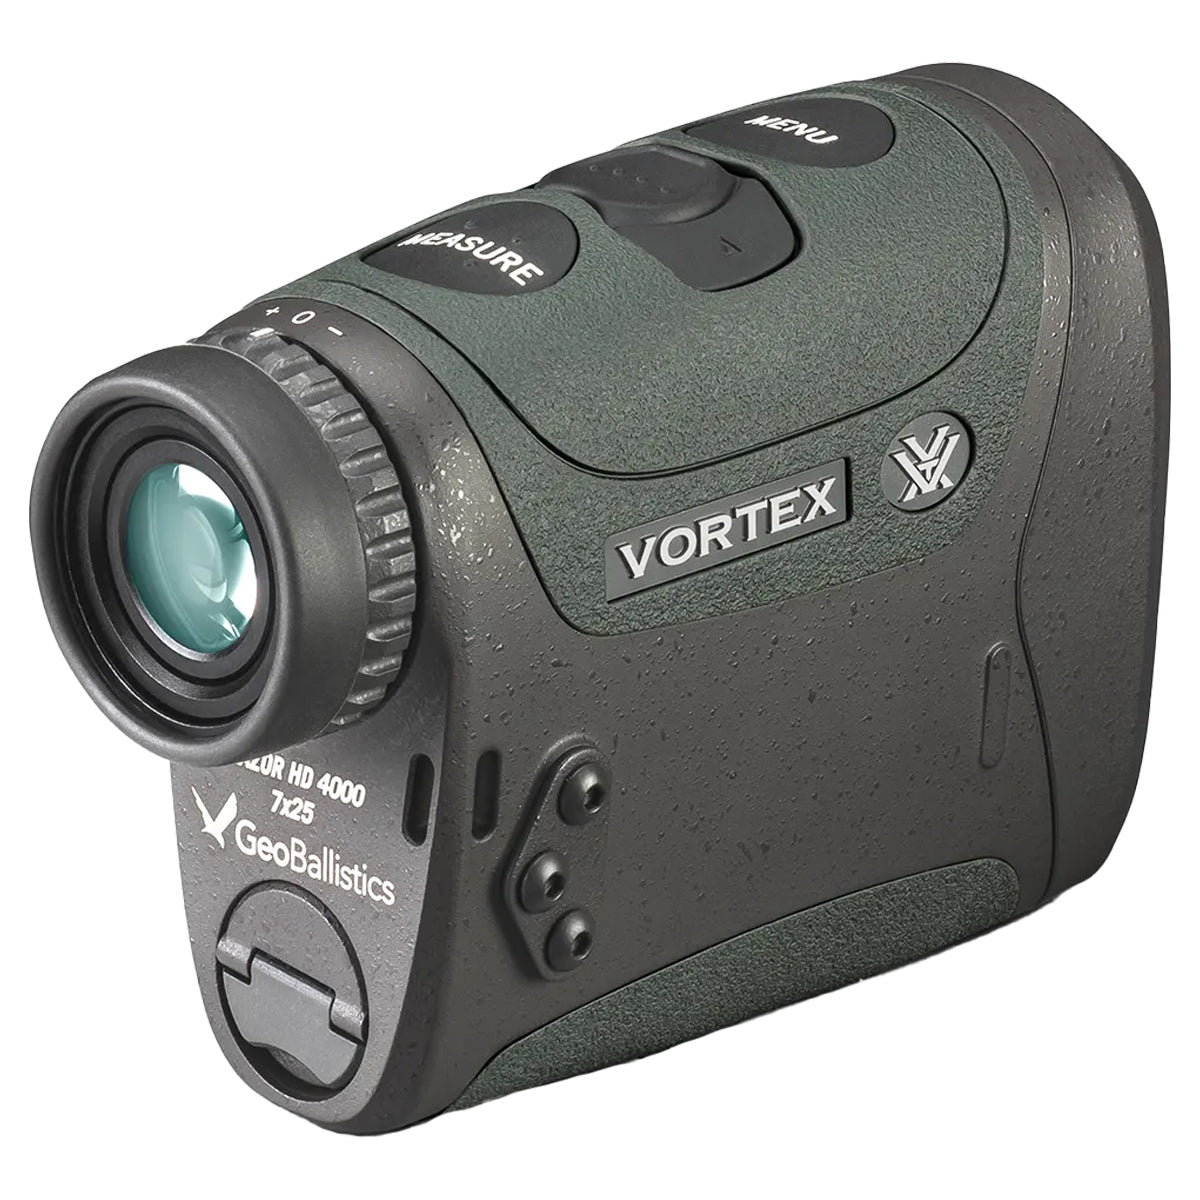 Vortex Razor HD 4000 GB Ballistic LRF in  by GOHUNT | Vortex Optics - GOHUNT Shop